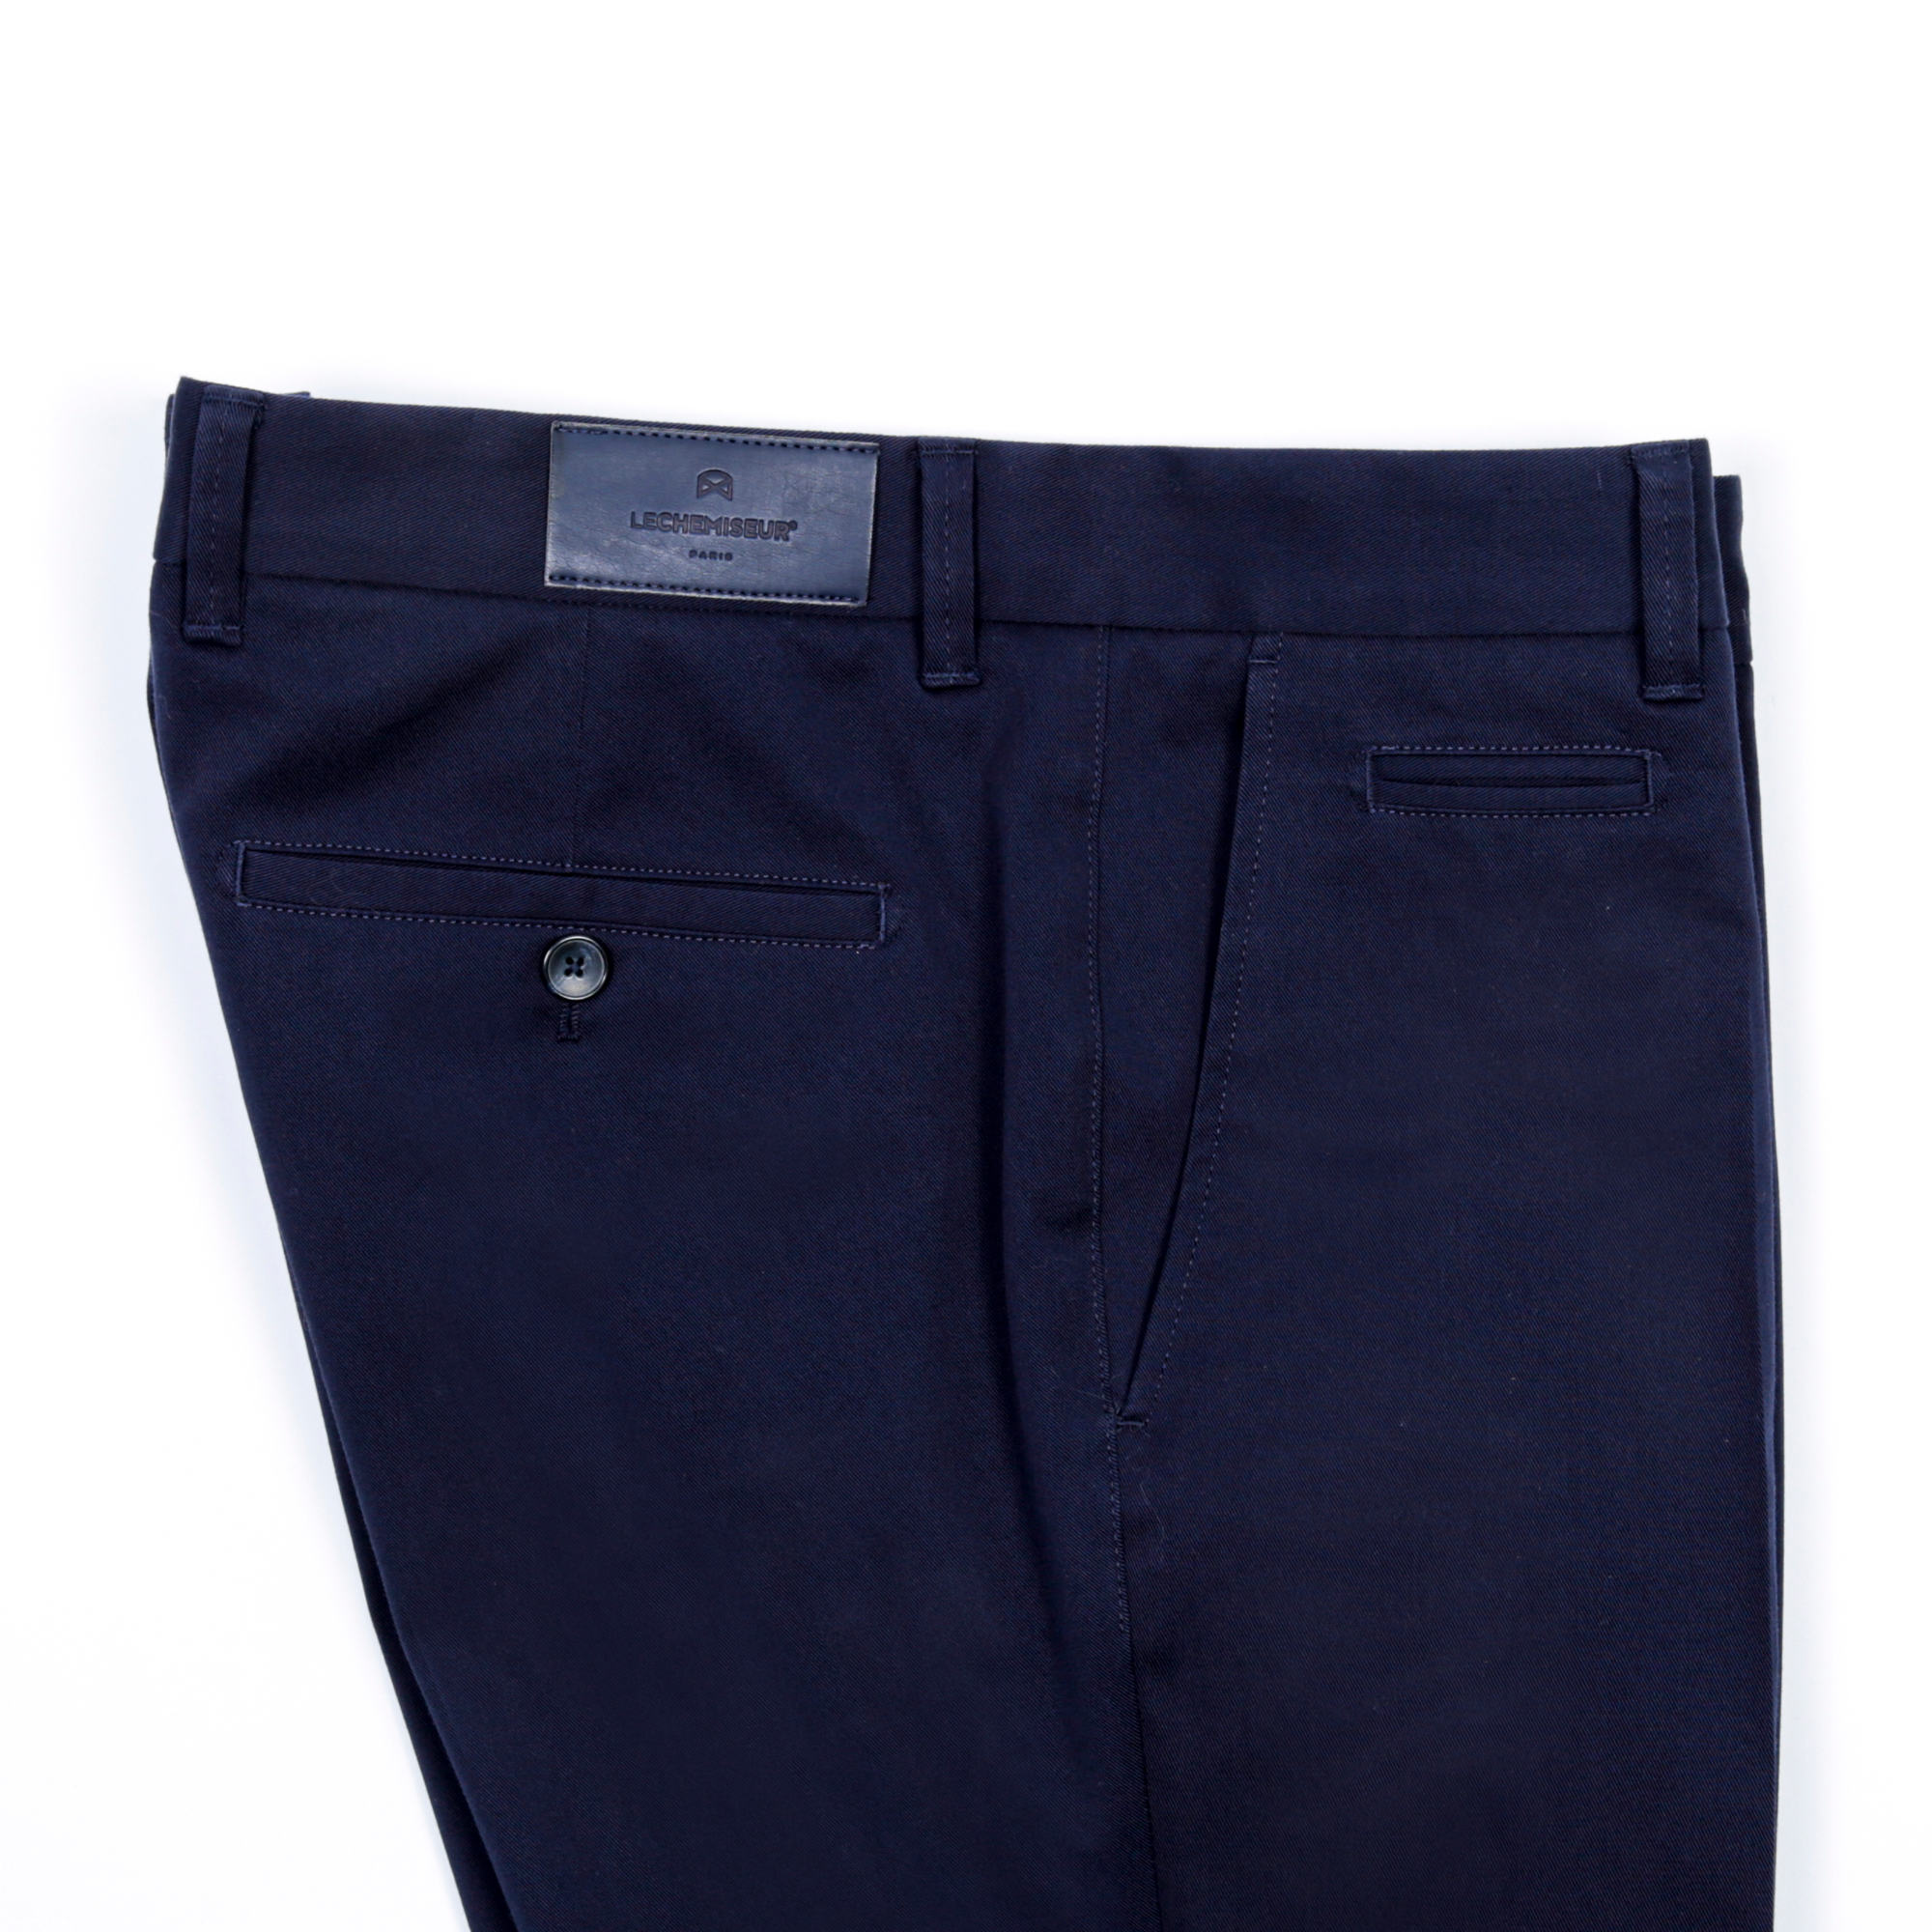 Pantalon Slim Homme- Couleur Bleu Nuit